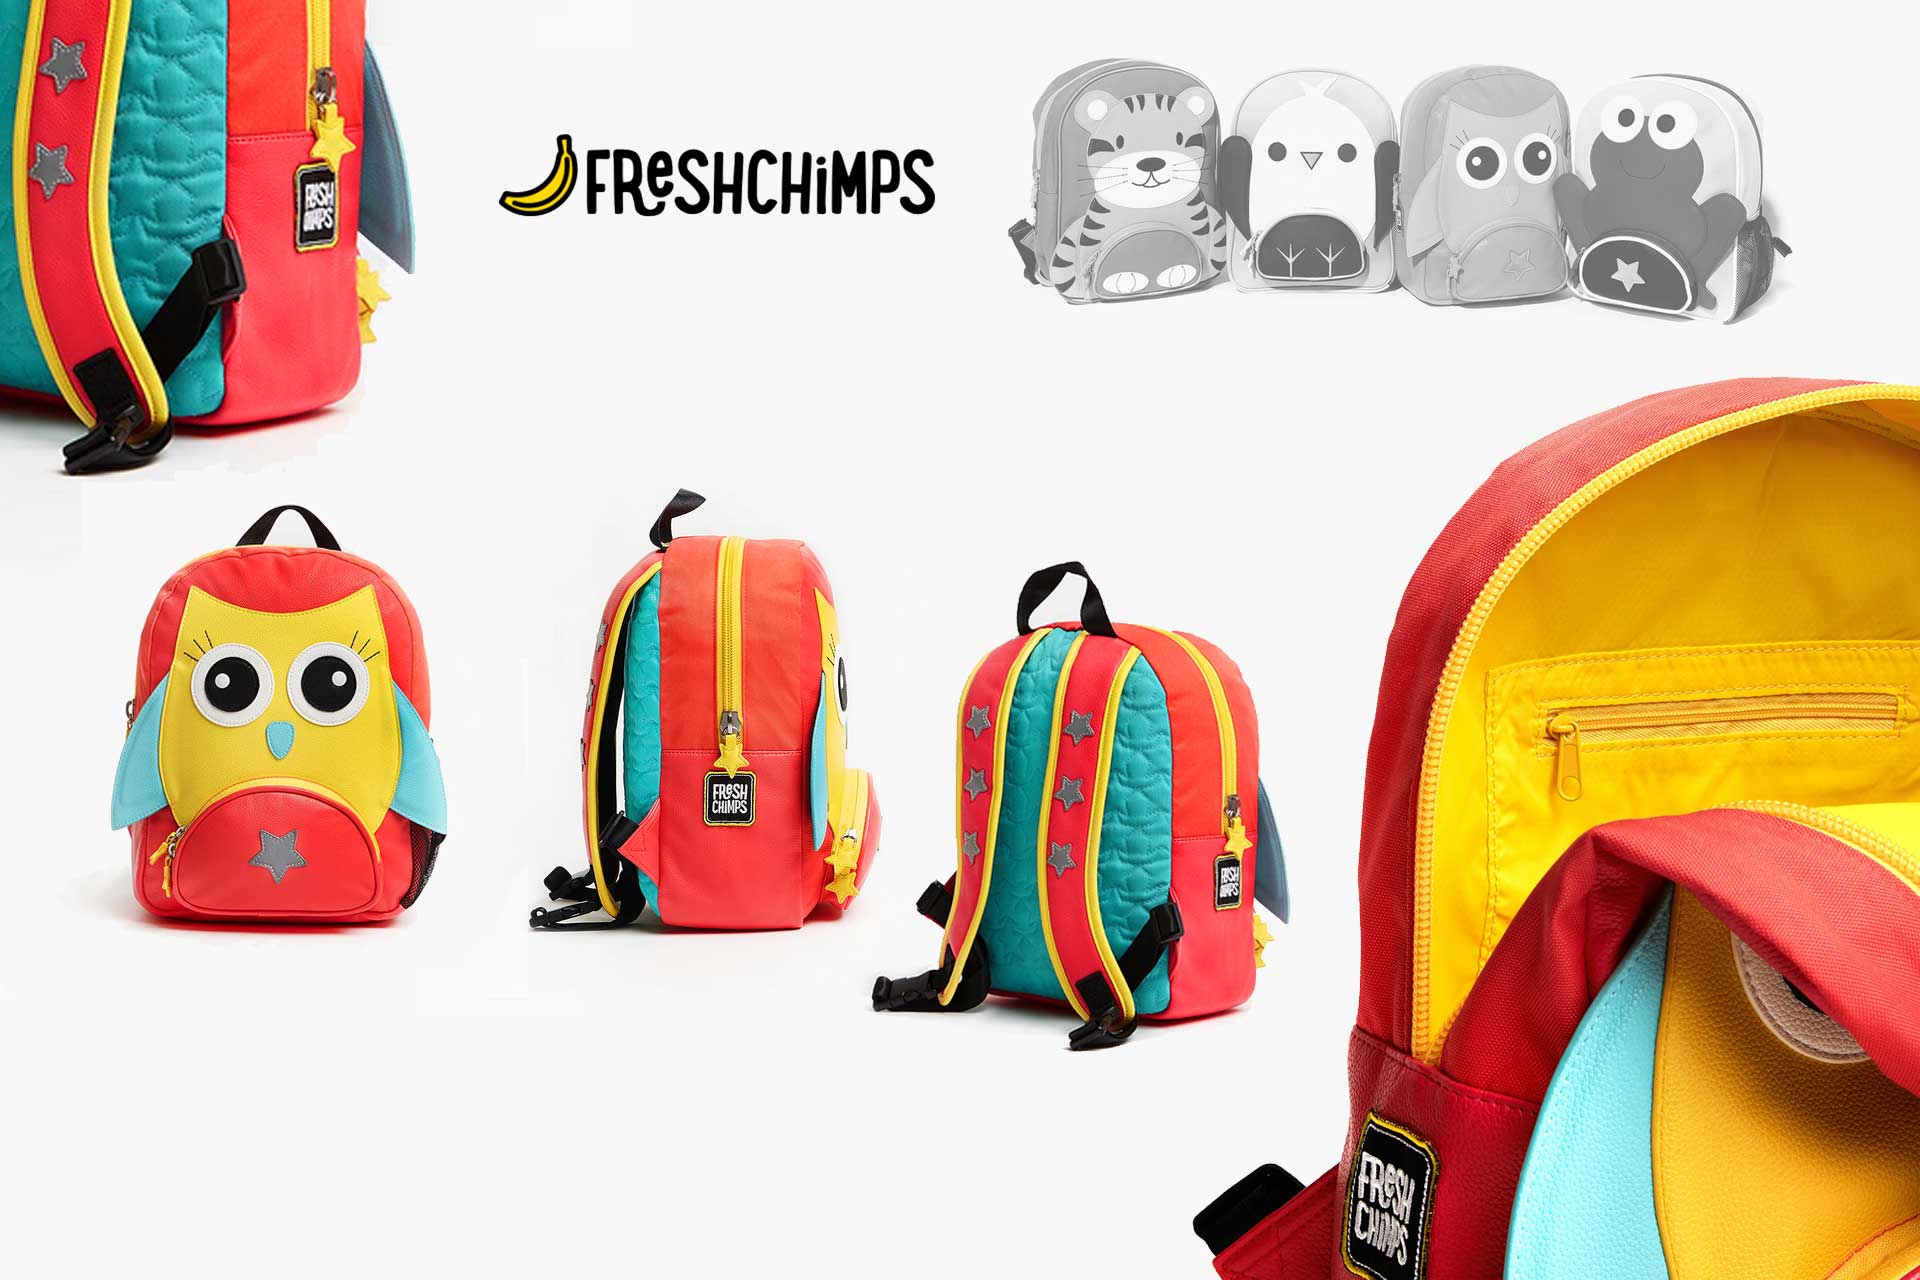 Grafisch ontwerpbureau TVHDesign realiseerde voor Freshchimps het ontwerp van Kinder rugtassen voor gebruiksgemak en veiligheid zonder in te boeten aan stijl en speelsheid